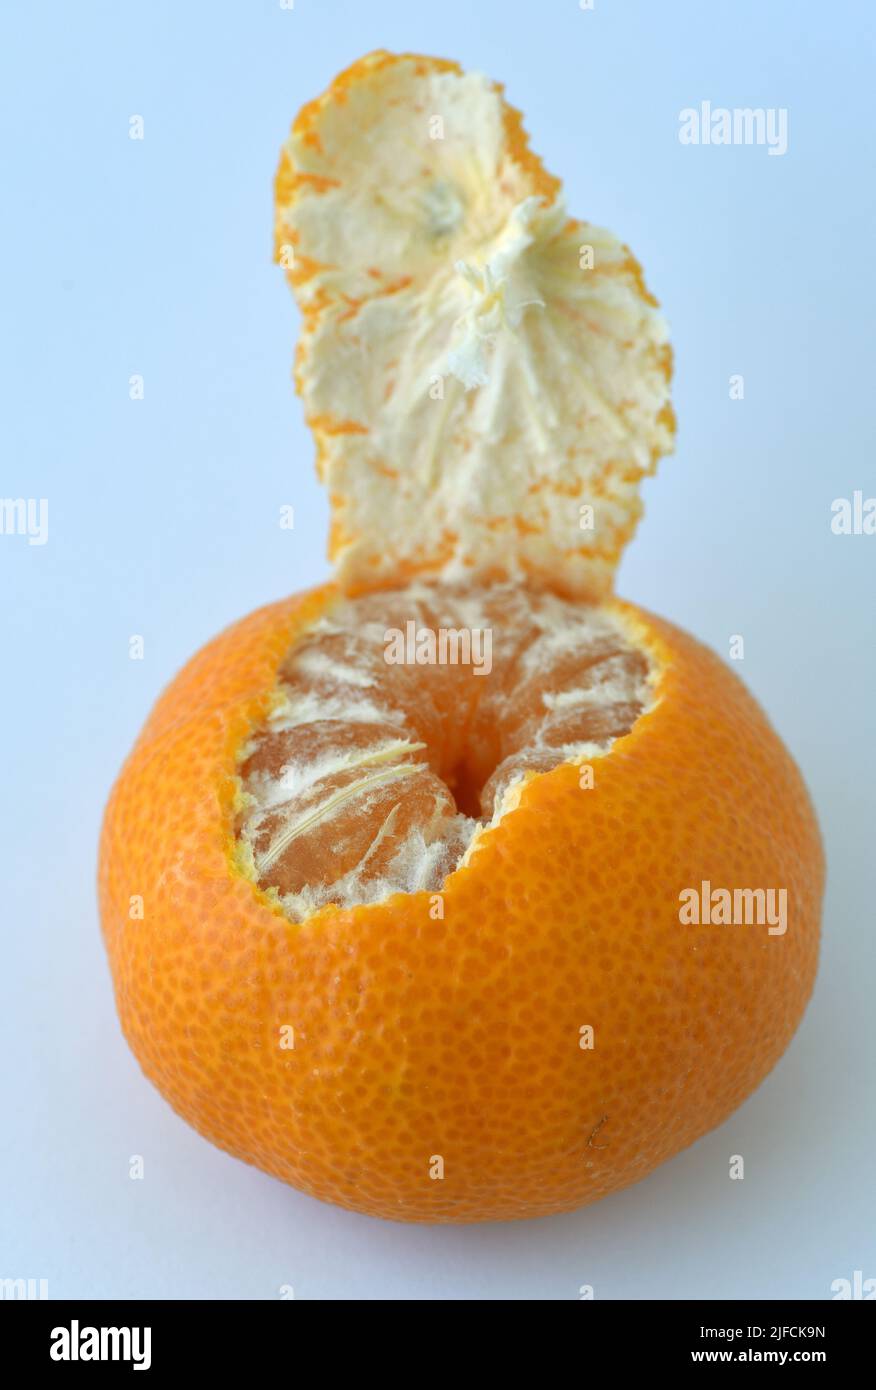 Una vista della parte superiore di un frutto di arancia parzialmente pelato con segmenti che mostrano e lembo di buccia ancora attaccato Foto Stock